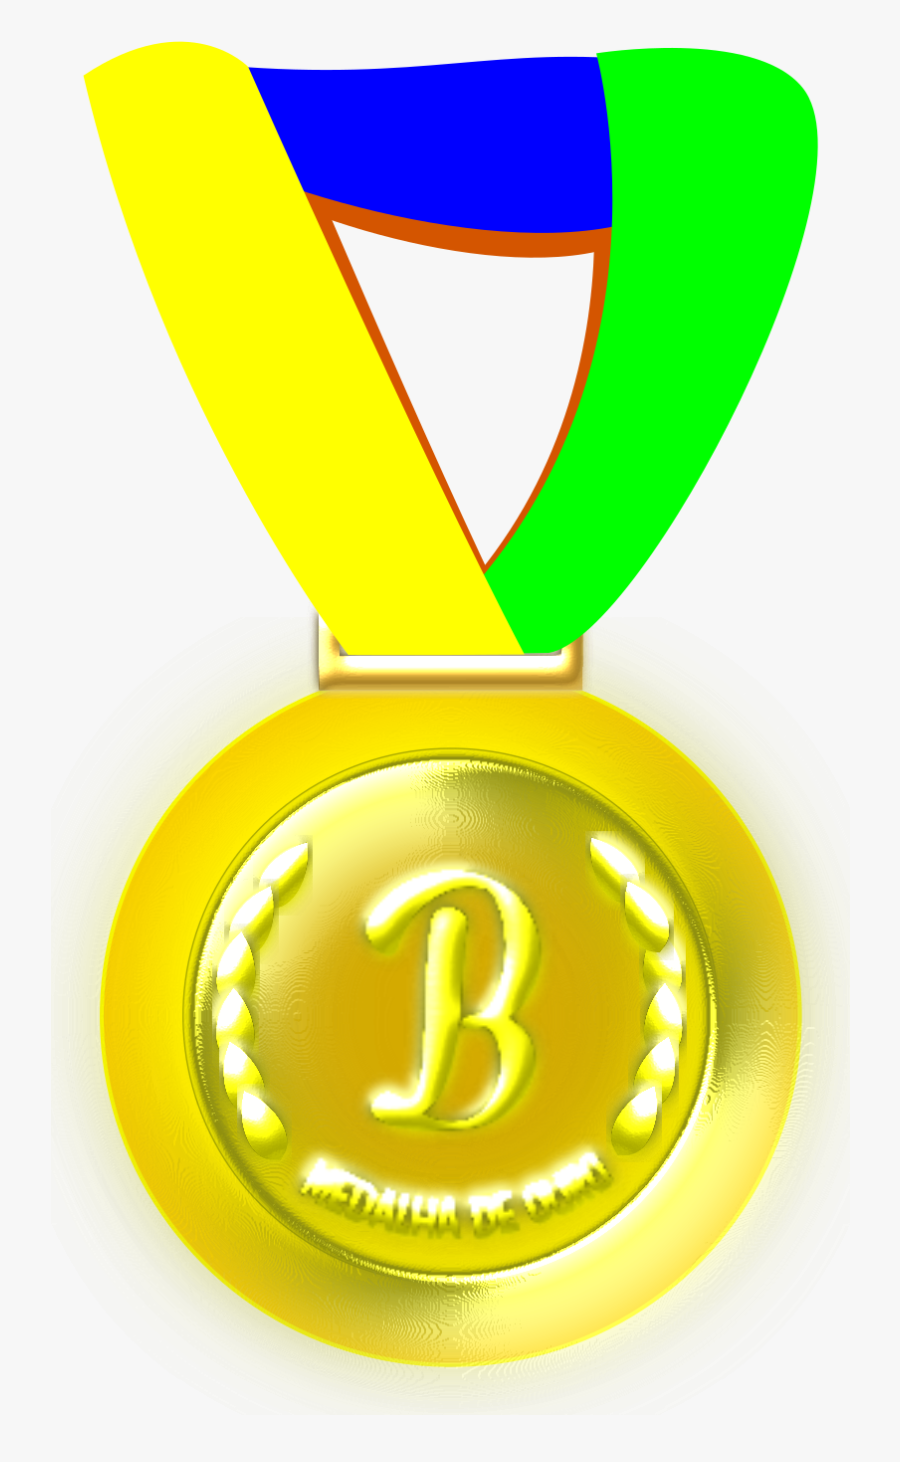 Gold Gold Medal Medals Png Image - Medalha Do Brasil Png, Transparent Clipart